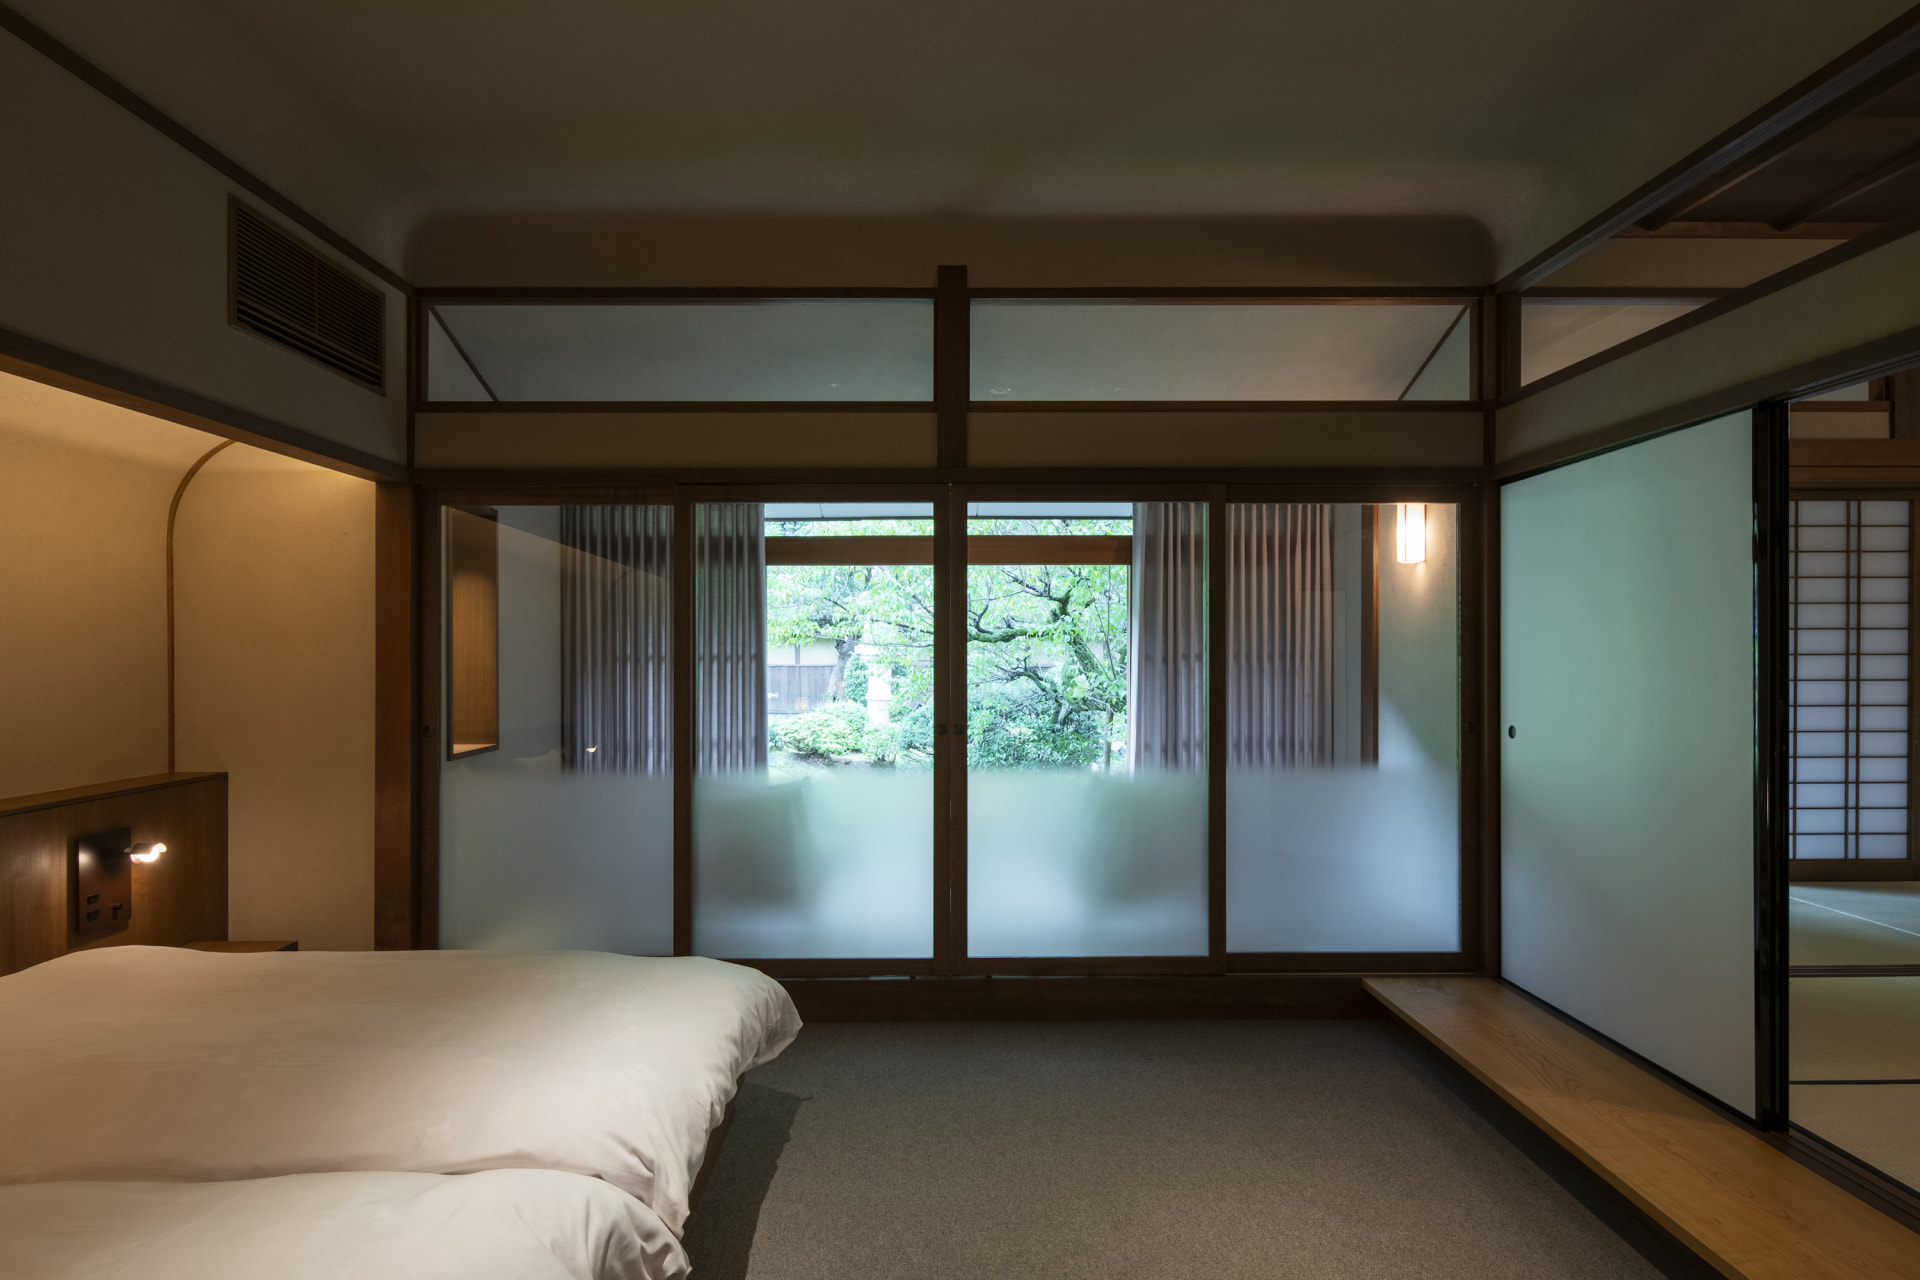 ケース・リアルが改修を手がけた 城崎温泉の老舗旅館「三木屋」 | Webマガジン「AXIS」 | デザインのWebメディア